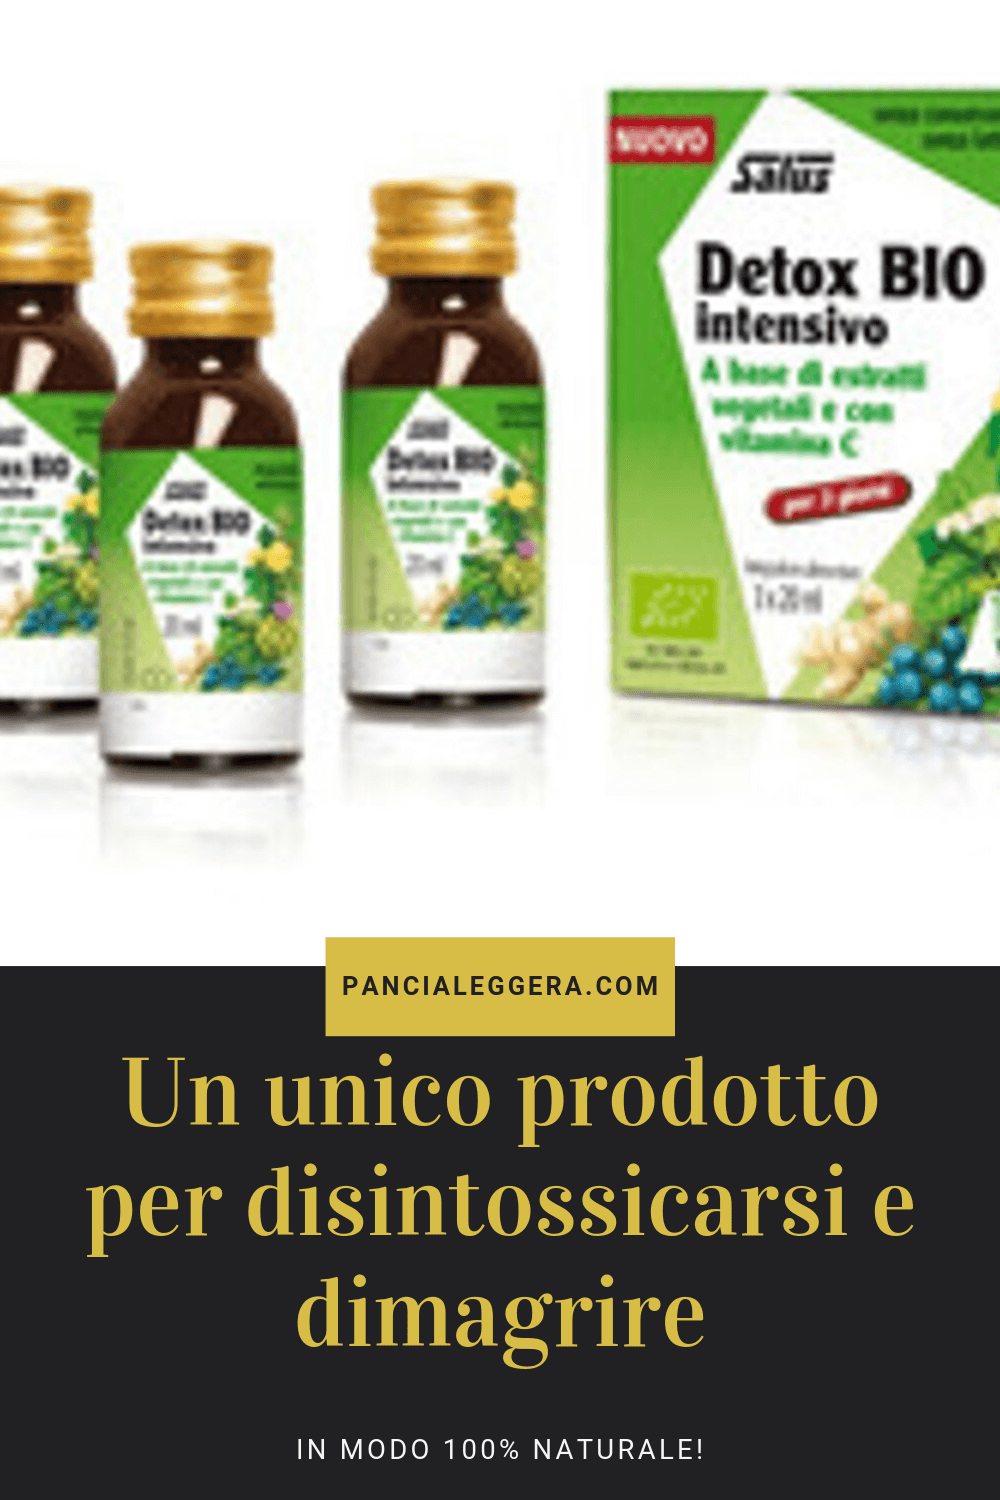 Detox Bio Intensivo – come disintossicarsi e dimagrire con un unico prodotto naturale?